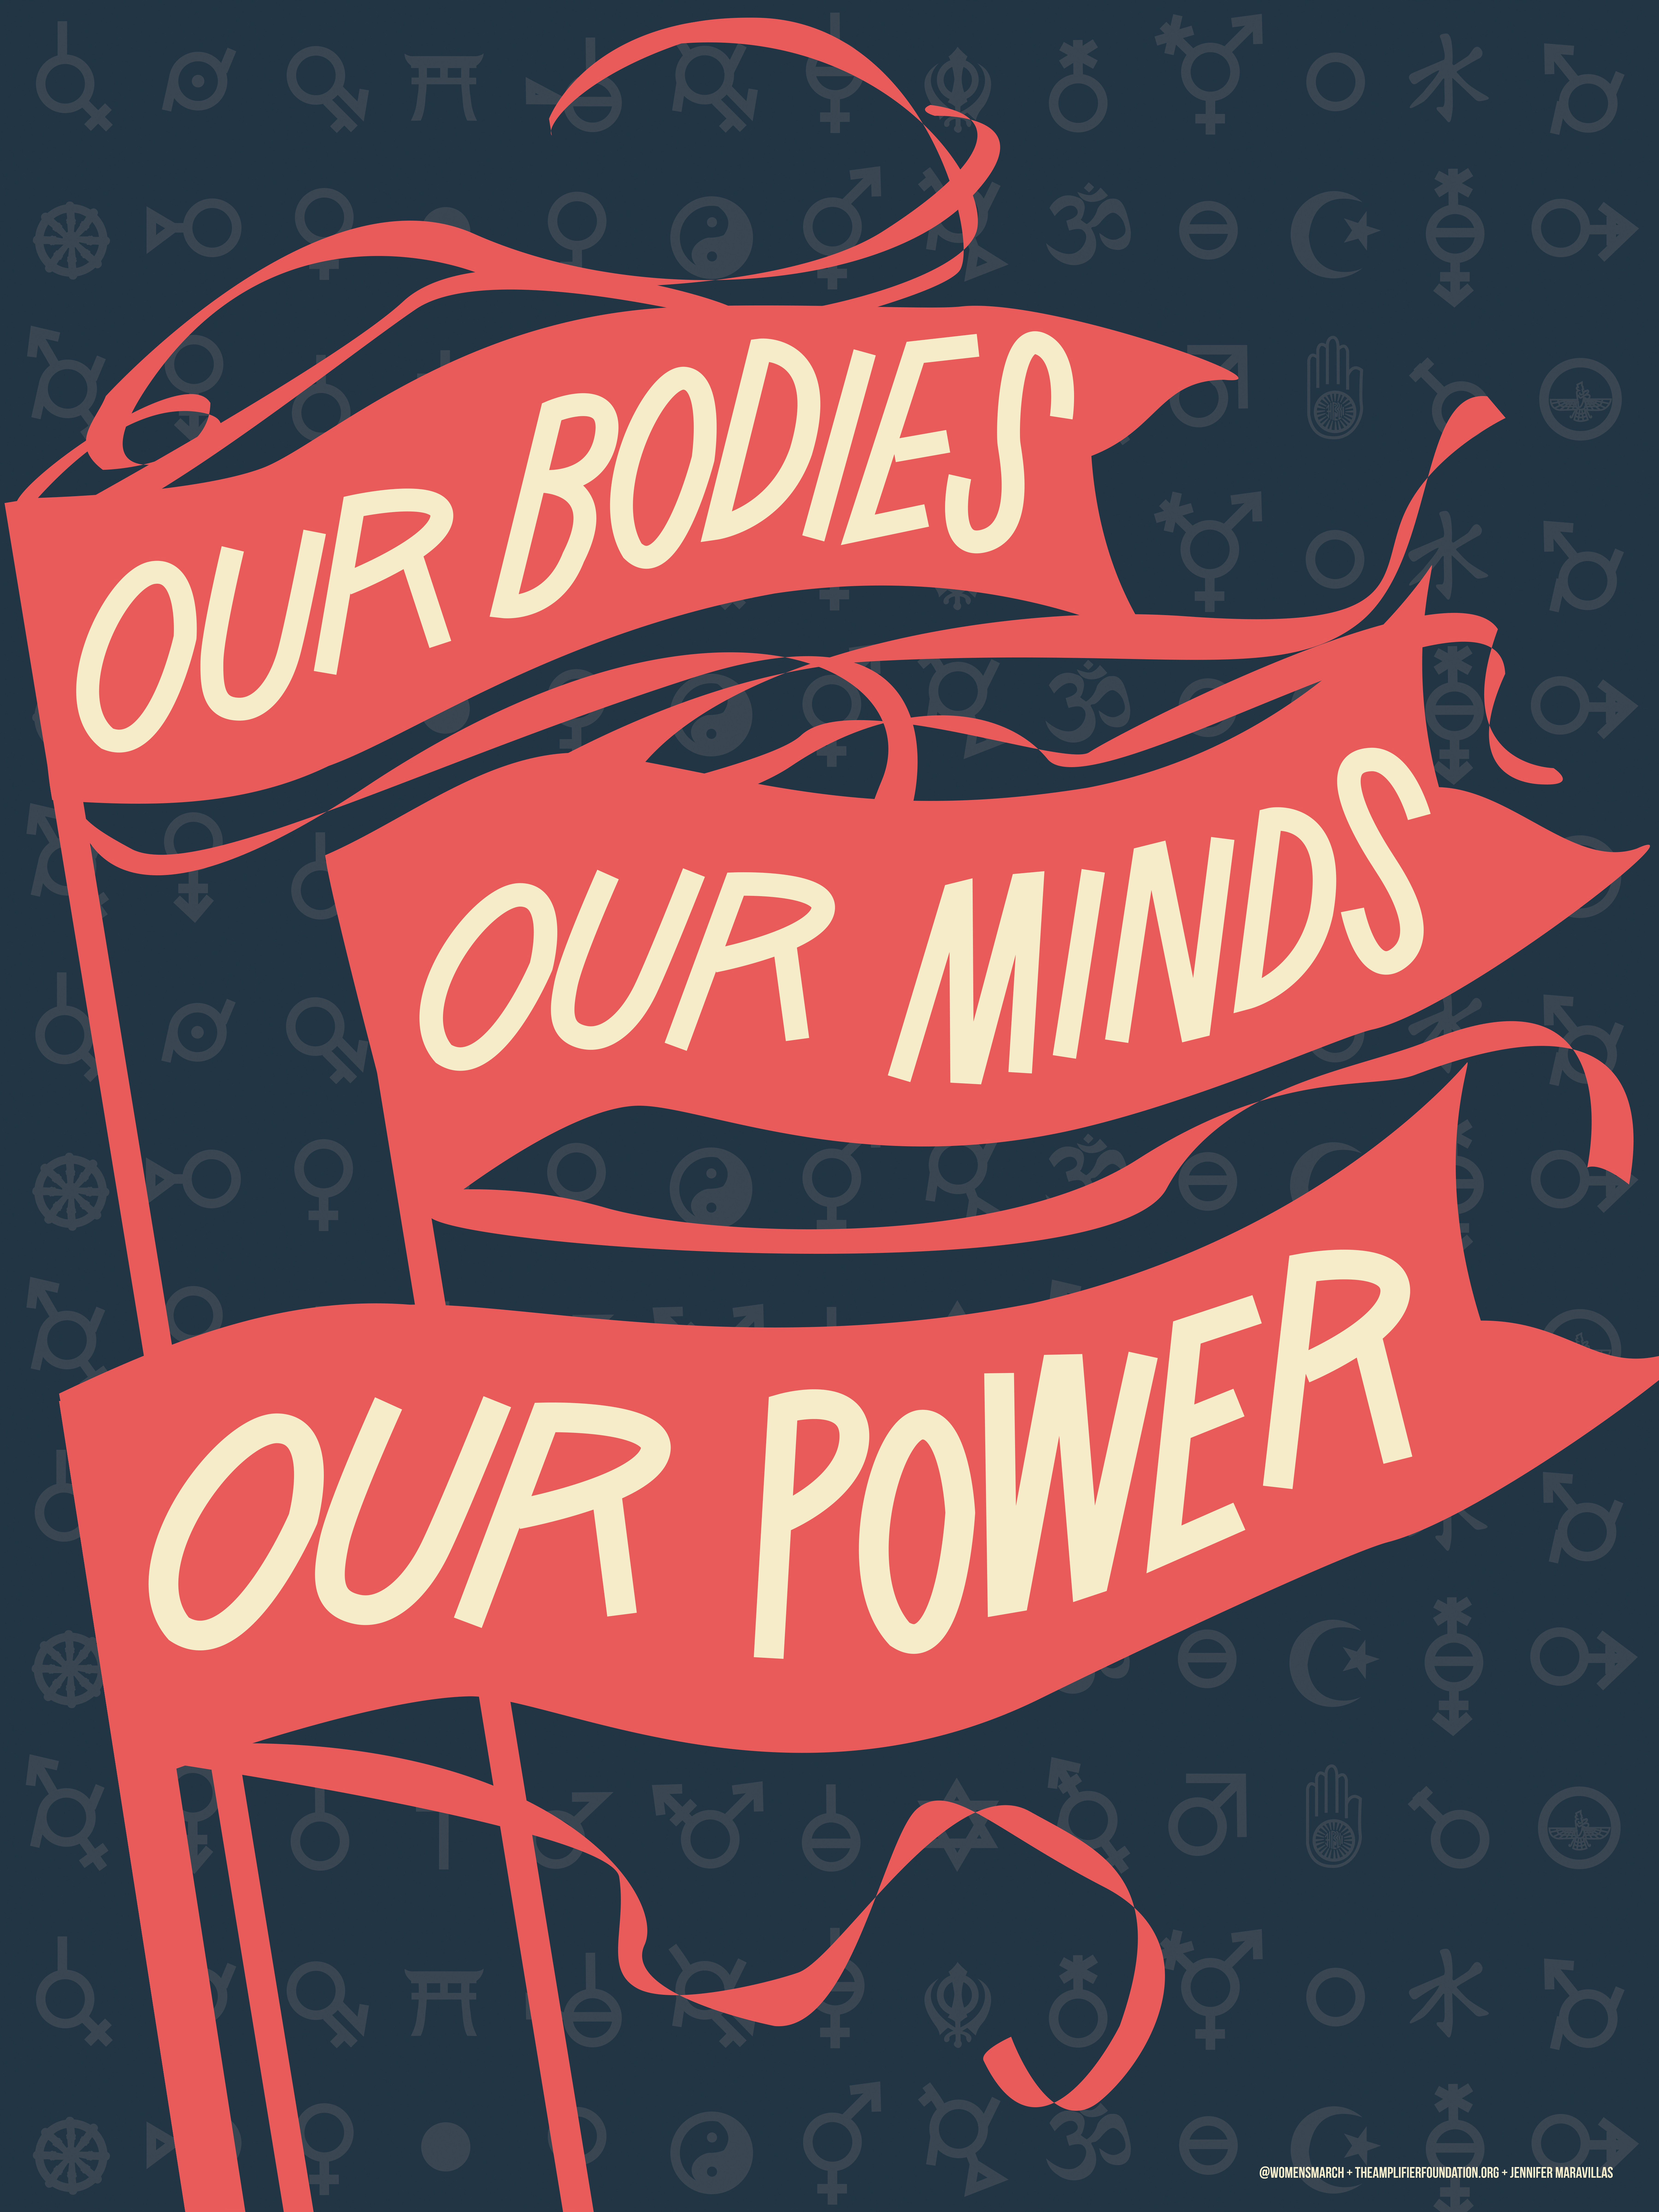 Jennifer Maravillas, "Our Bodies, Our Minds"